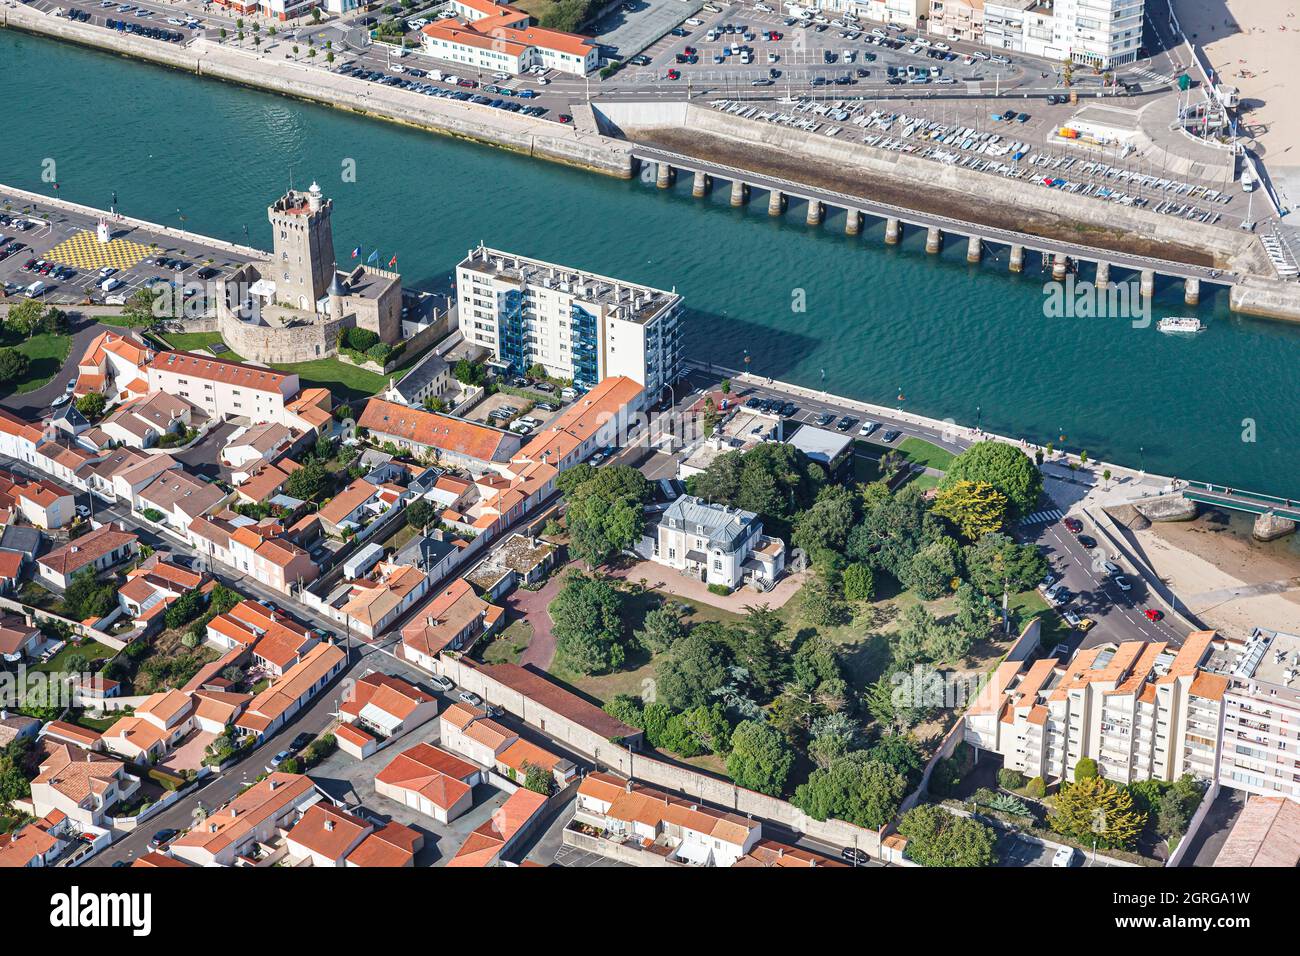 France, Vendée, les Sables d'Olonne, la Villa Charlotte, la Tour d'Arundel et le canal menant au port (photographie aérienne) Banque D'Images